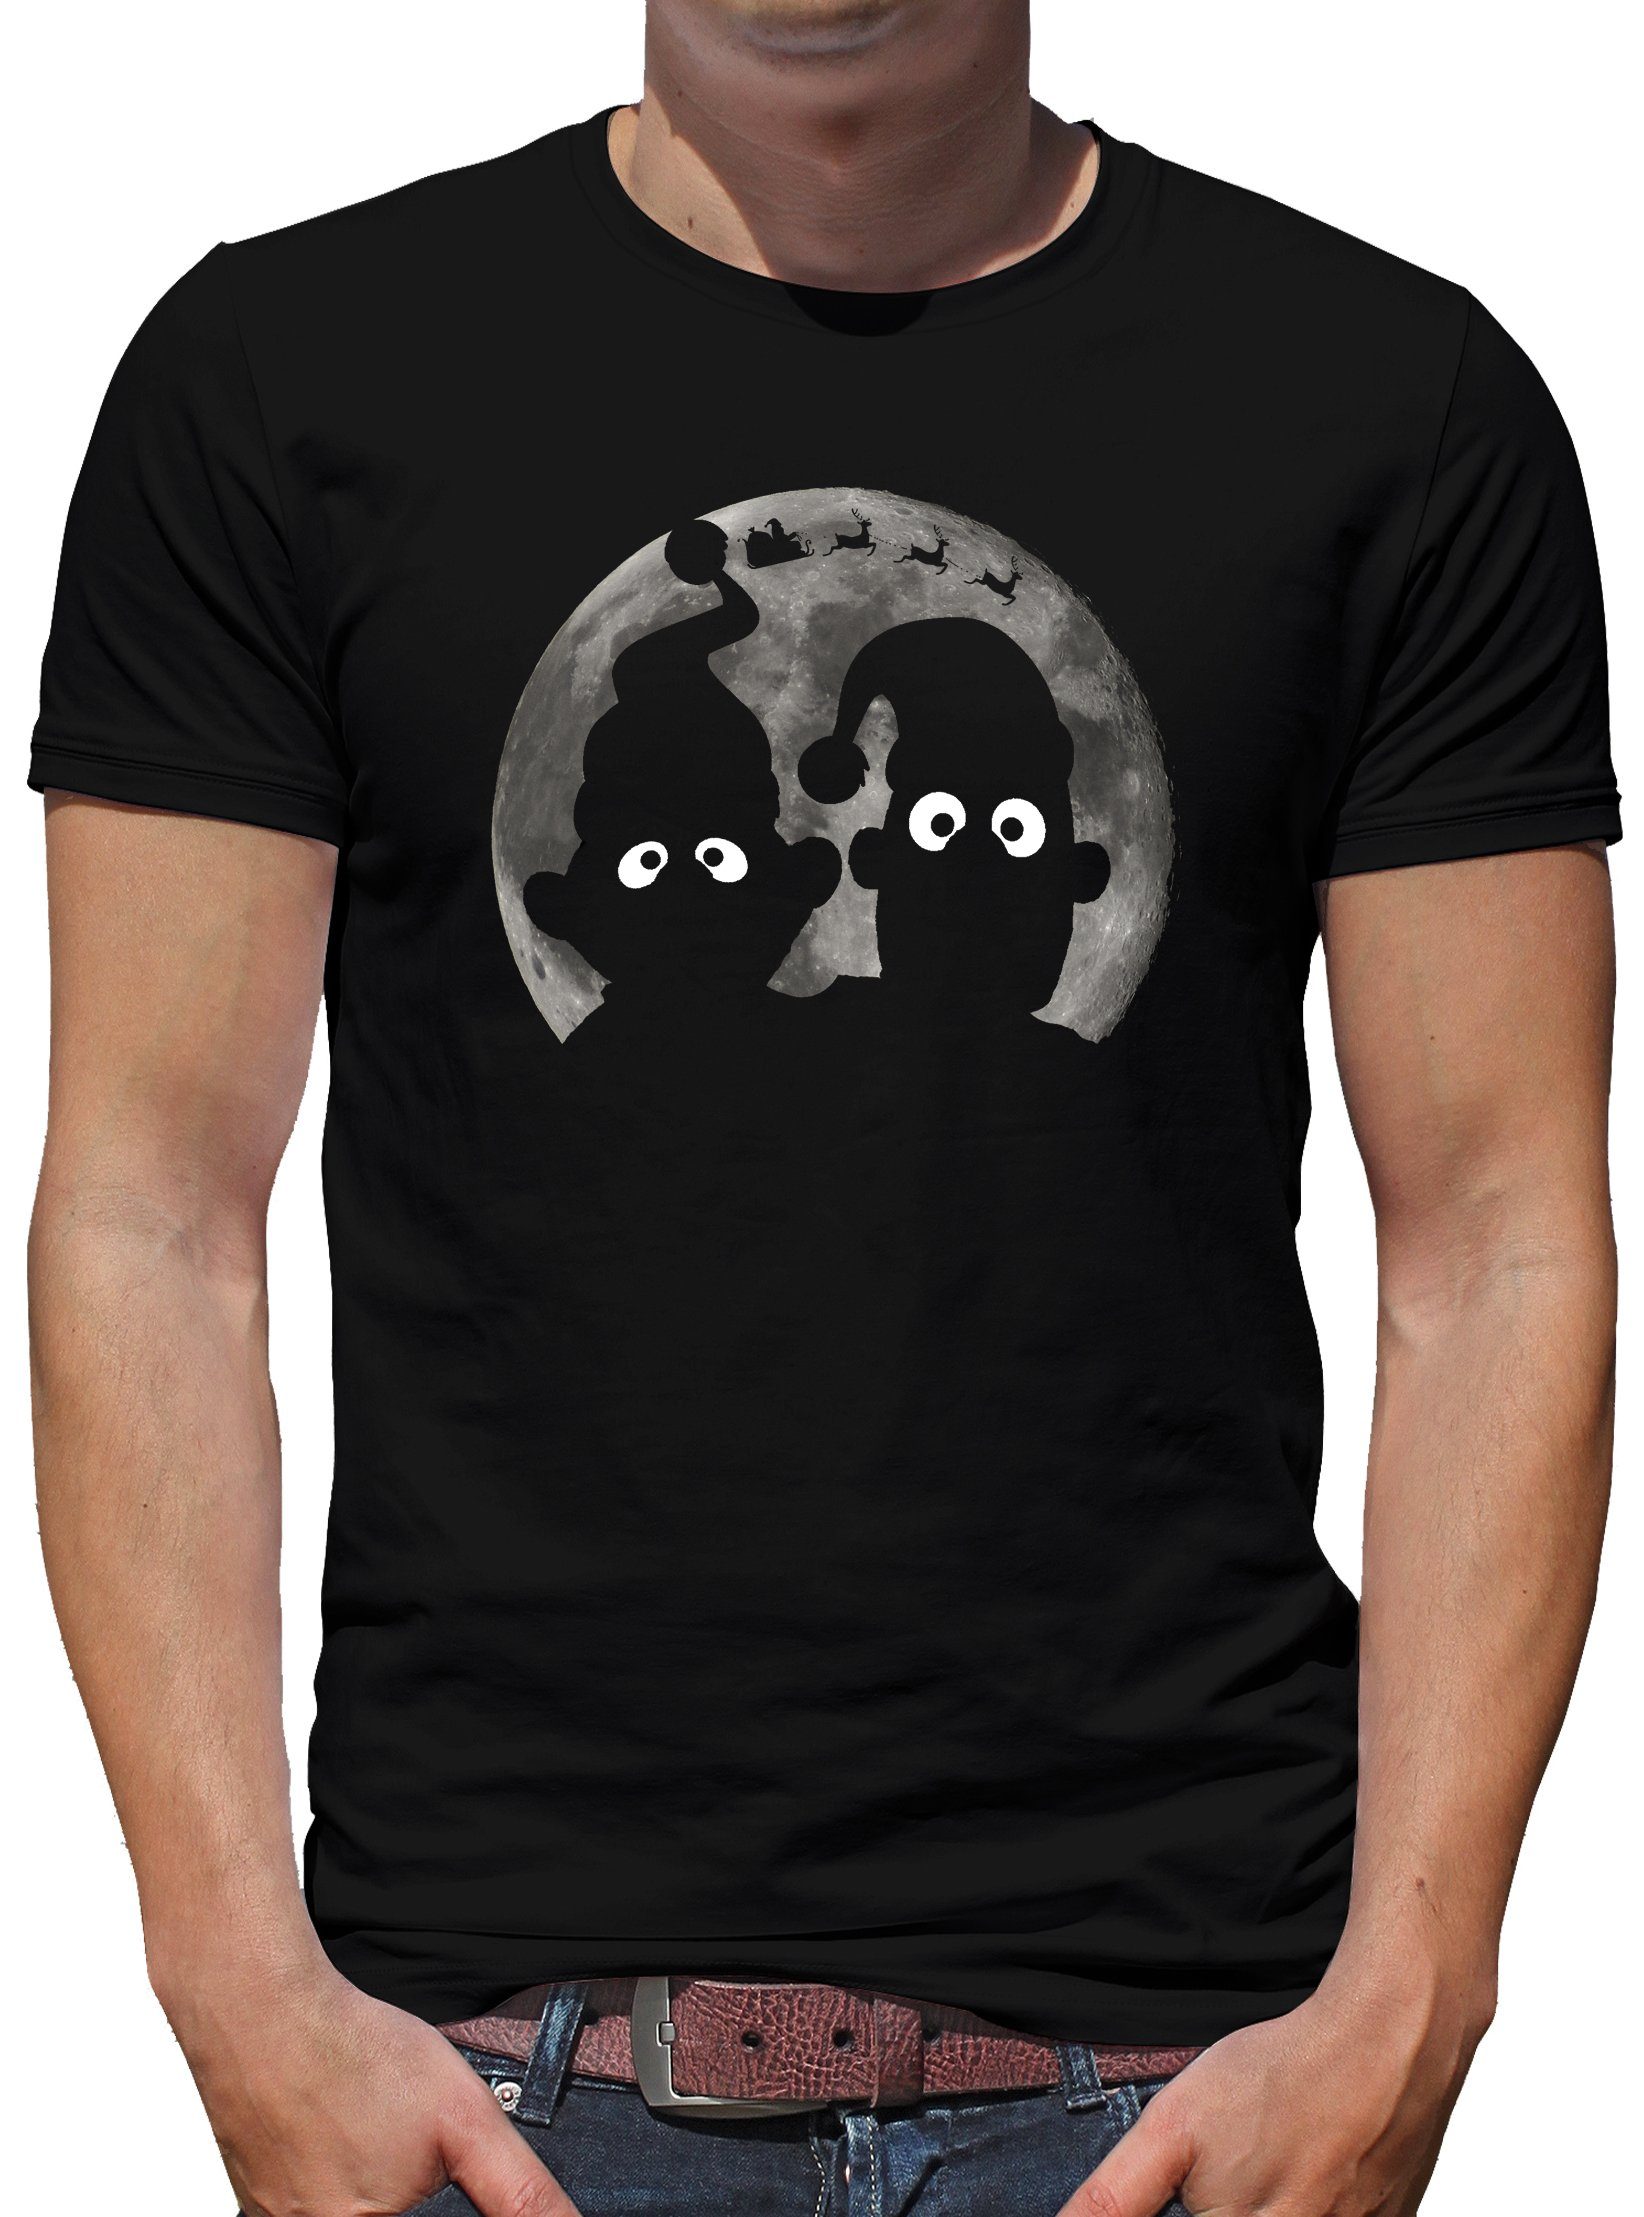 TShirt-People Print-Shirt Shadow Puppets X-Mas Edition Ernie Bert